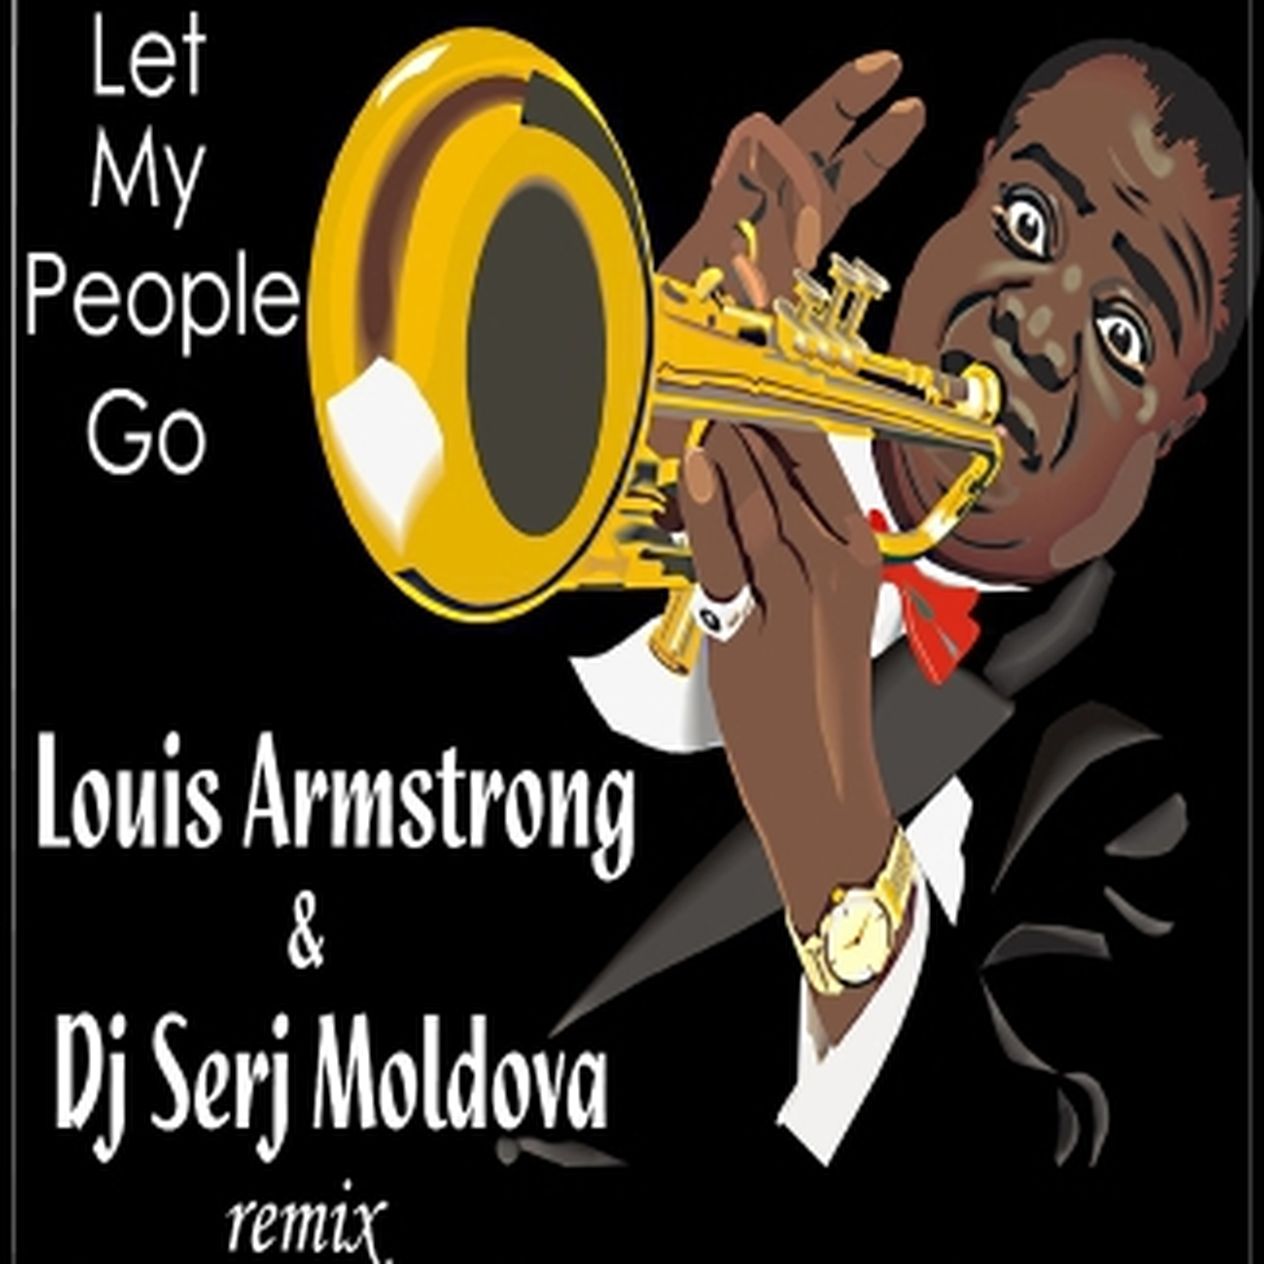 Лет гоу слушать. Луи Армстронг Let my people go. Луи Армстронг лет май. Спиричуэл Louis Armstrong – “Let my people go”.. Летс май пипл го.